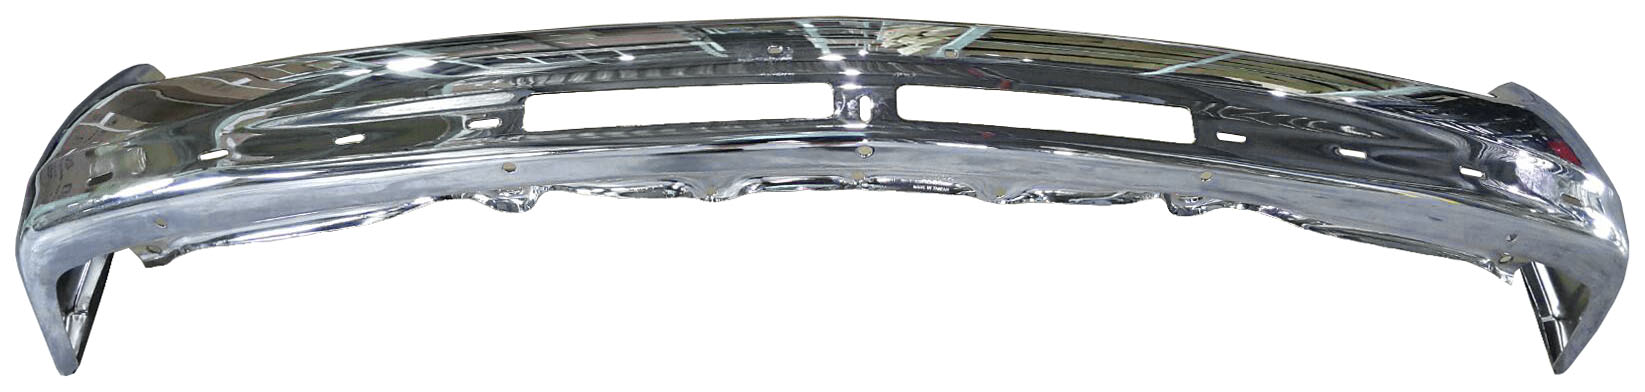 Aftermarket METAL FRONT BUMPERS for CHEVROLET - SILVERADO 3500, SILVERADO 3500,01-02,Front bumper face bar